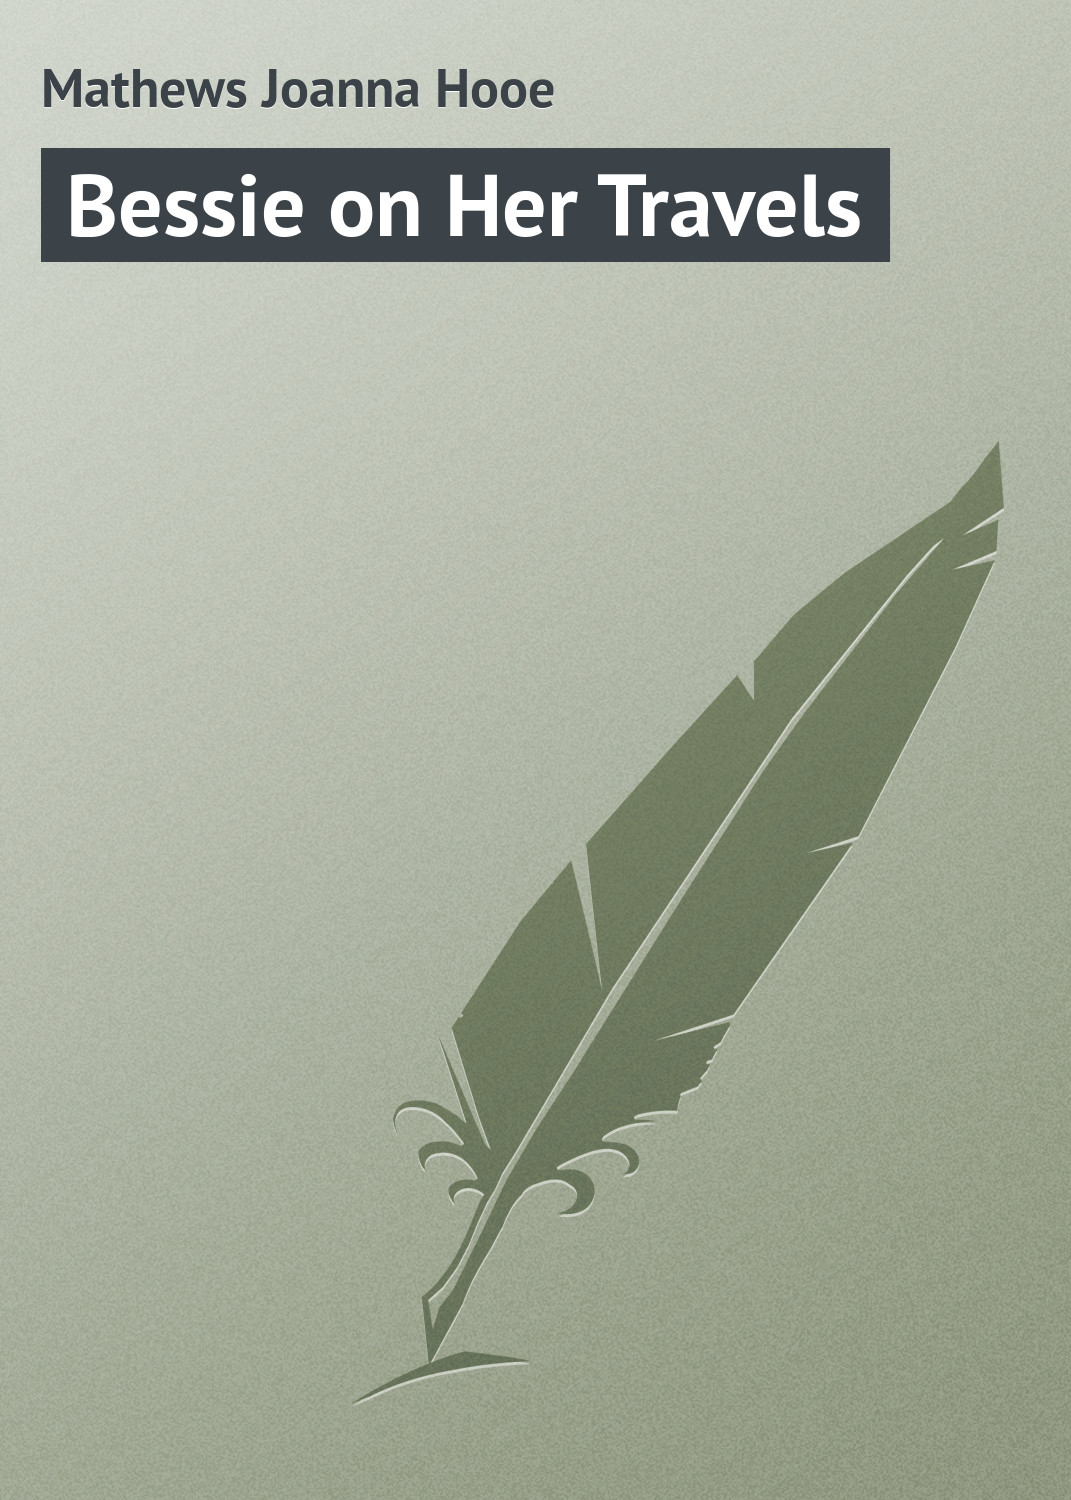 Книга Bessie on Her Travels из серии , созданная Joanna Mathews, может относится к жанру Зарубежная классика, Зарубежные детские книги. Стоимость электронной книги Bessie on Her Travels с идентификатором 23164915 составляет 5.99 руб.